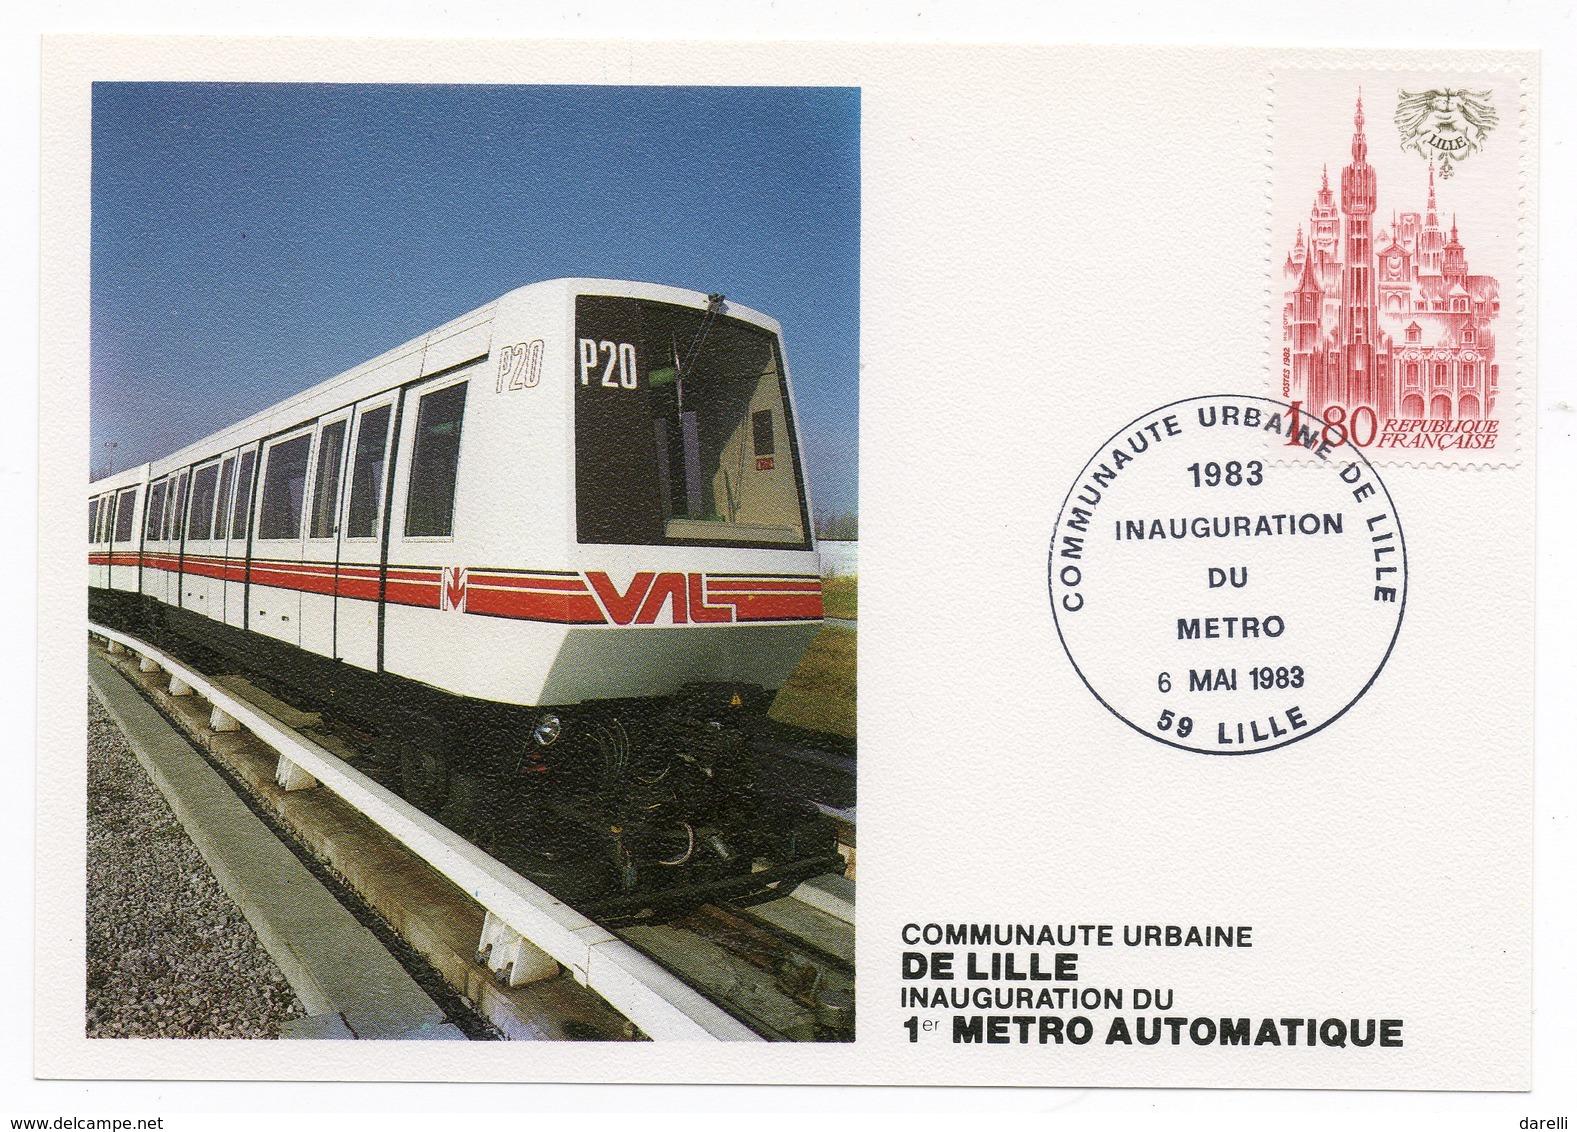 59 LILLE Inauguration Du Métro Communauté Urbaine De Lille 1983 - 6/05/83 - Trains